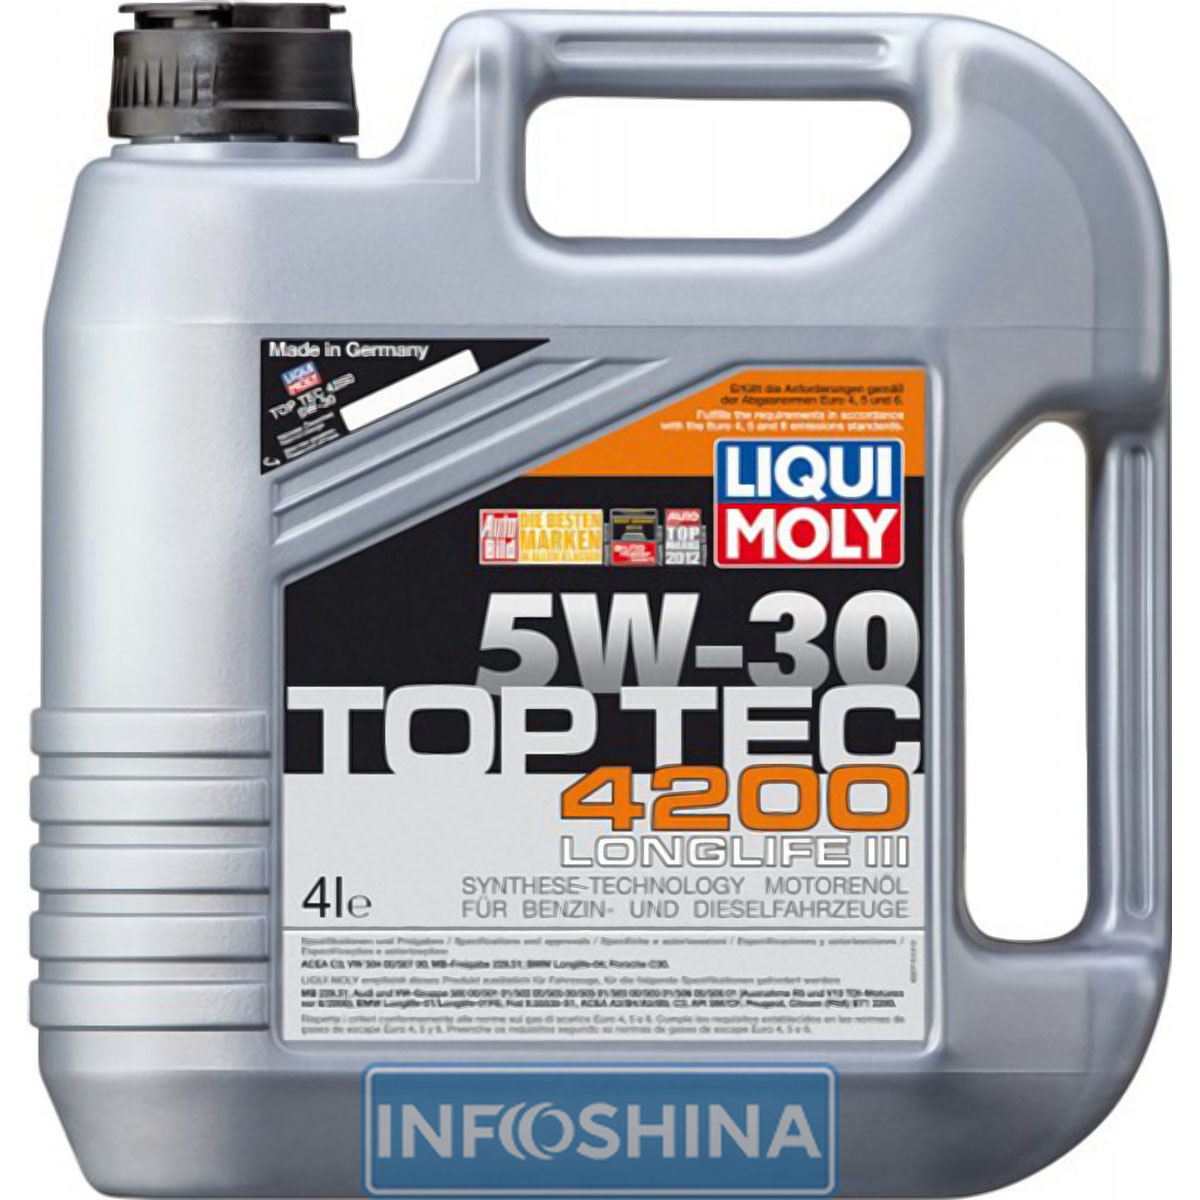 Купить масло Liqui Moly Top Tec 4200 5W-30 (4л)